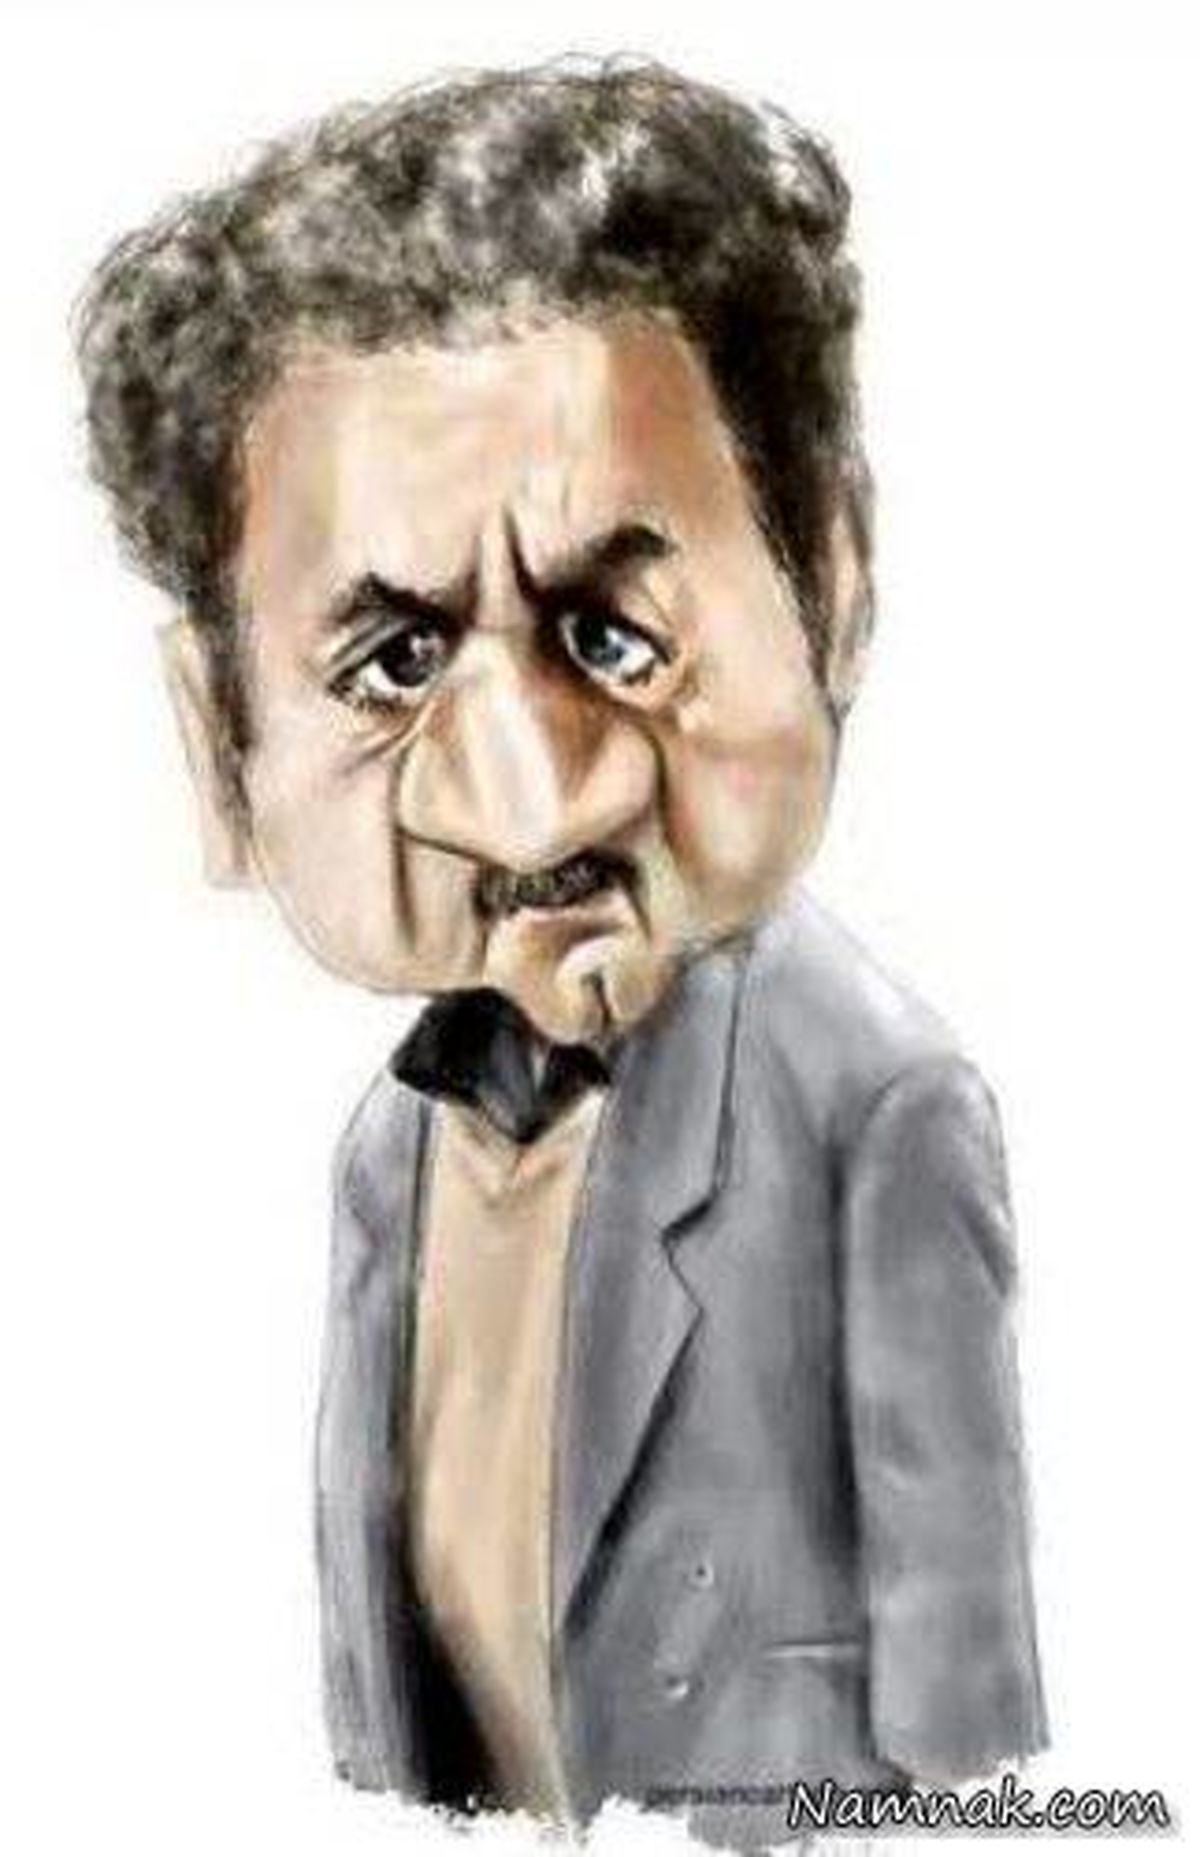 کاریکاتور باحال و بامزه بازیگران معروف ایرانی